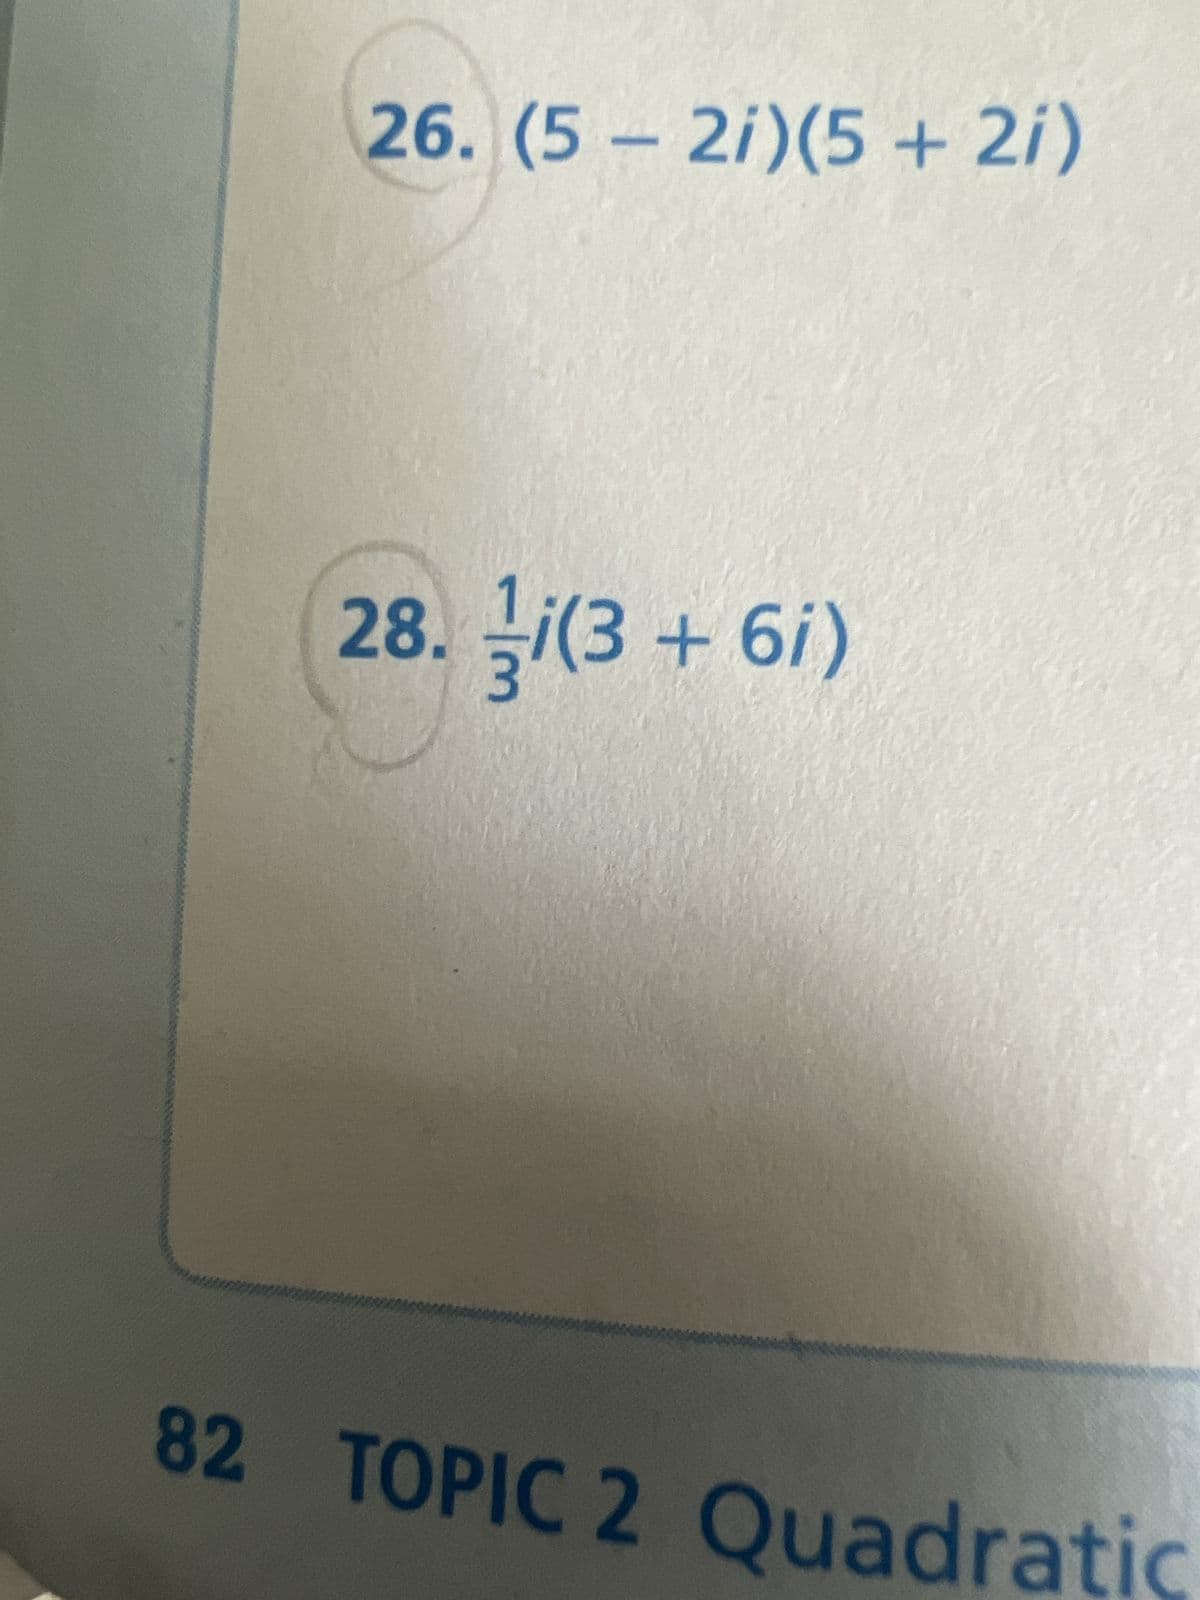 26. (5-2i)(5 + 2i)
28. i(3+6i)
82 TOPIC 2 Quadratic